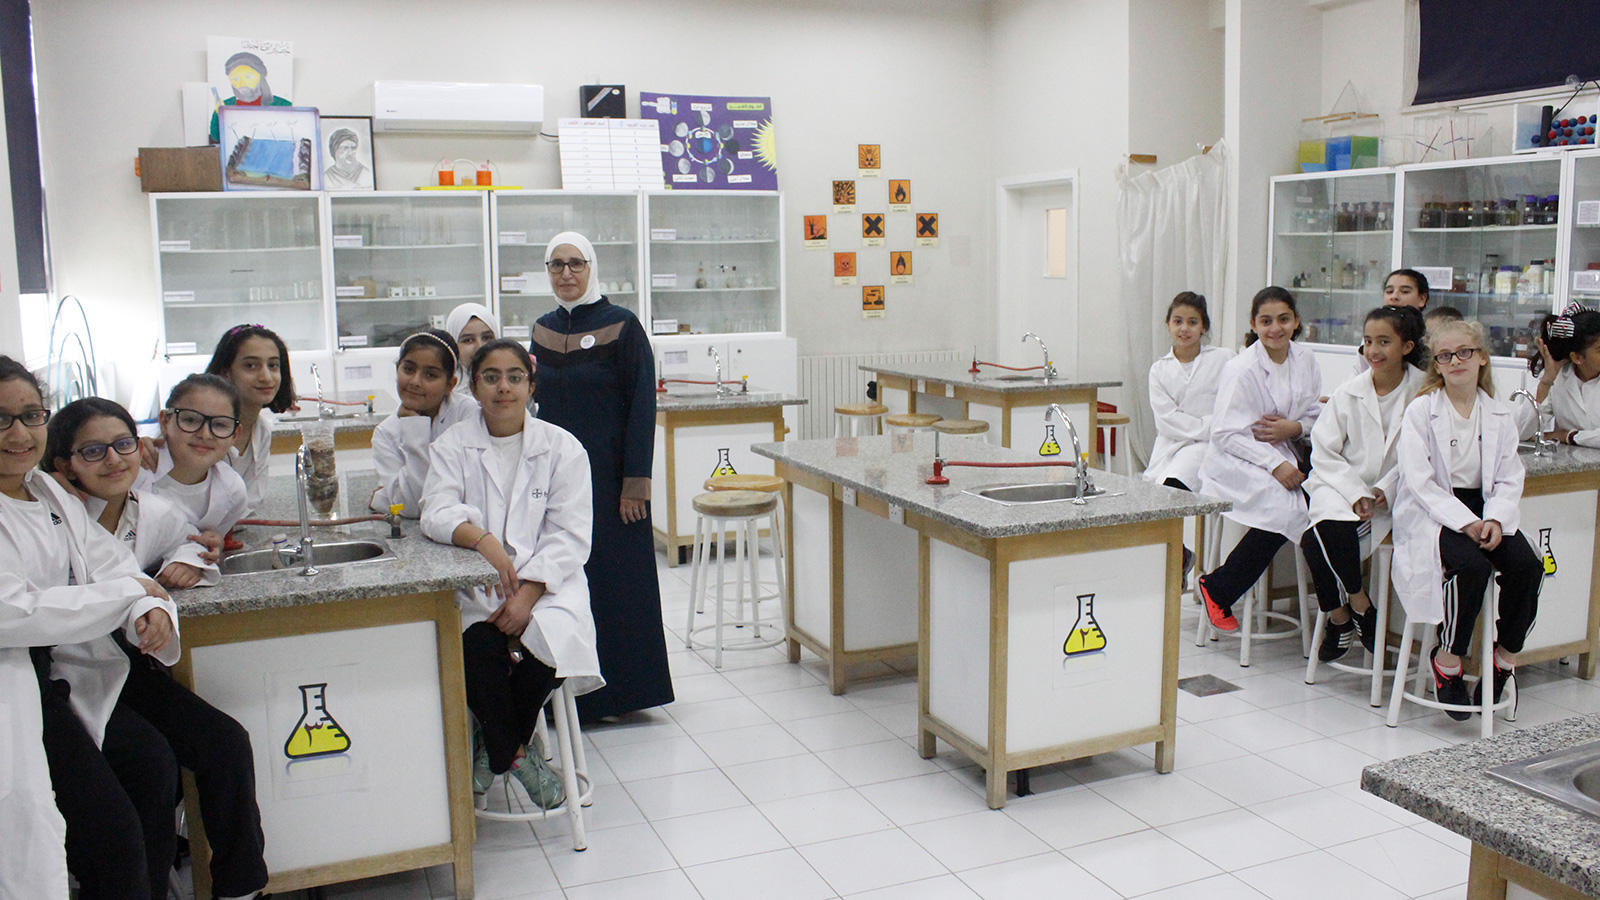 طالبات ومعلمتهن في مختبر العلوم بأحد المدارس الخاصة شمال العاصمة عمان (الجزيرة-أرشيف)